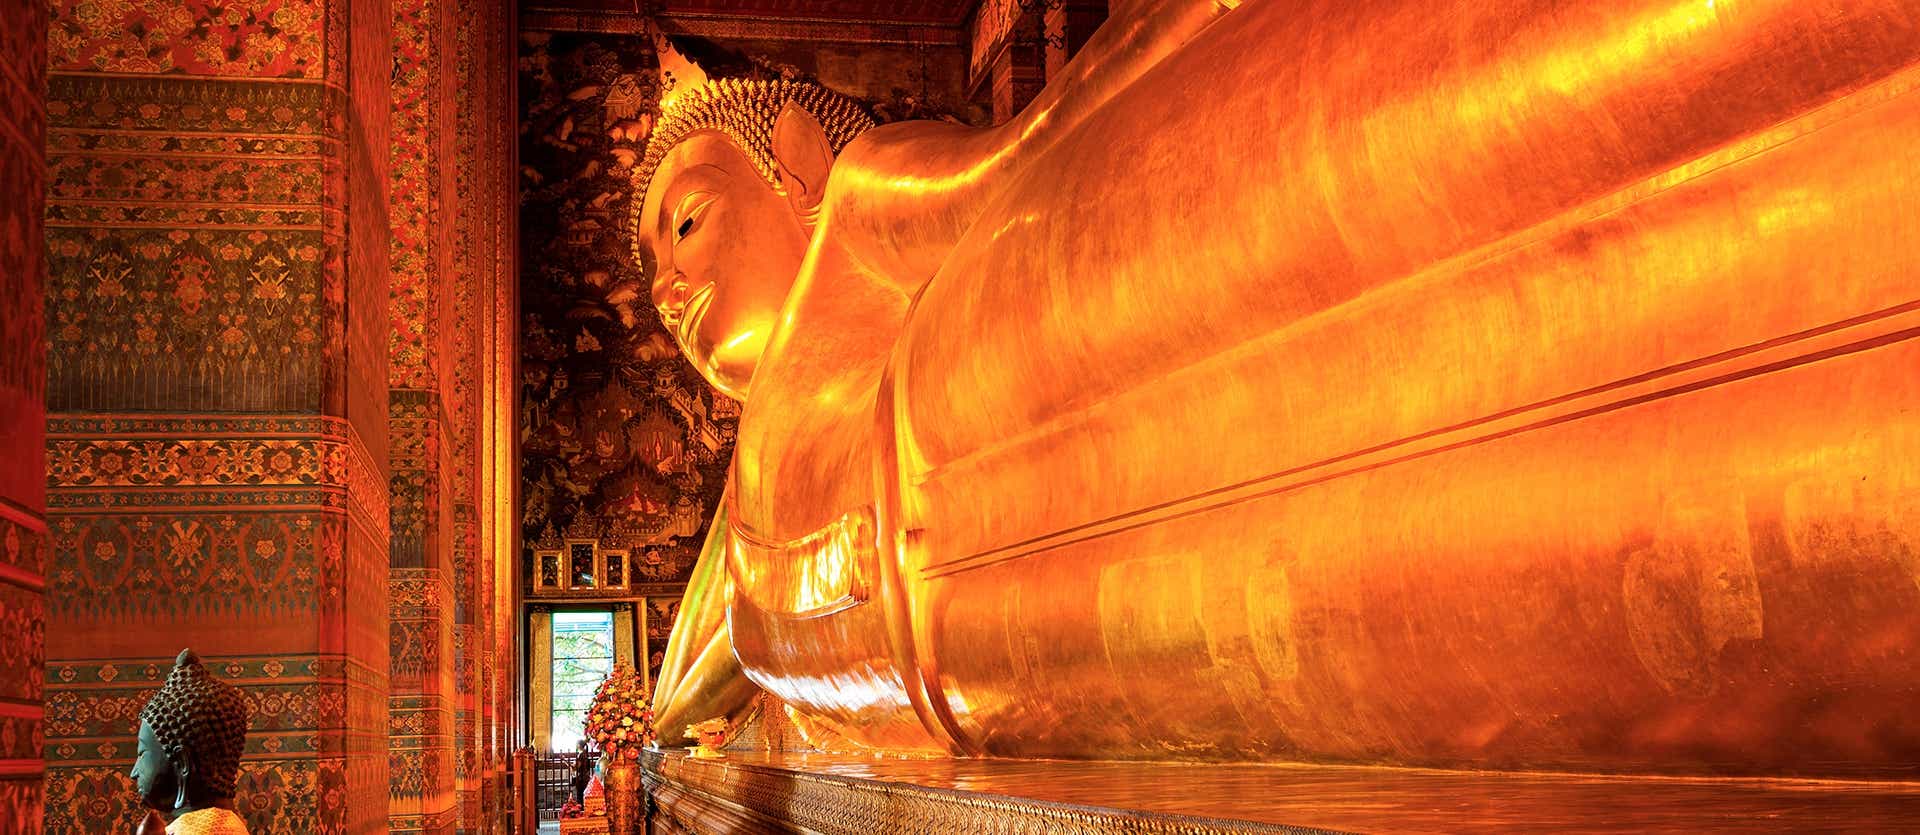 Le temple Wat Pho  <span class="iconos separador"></span> Bangkok